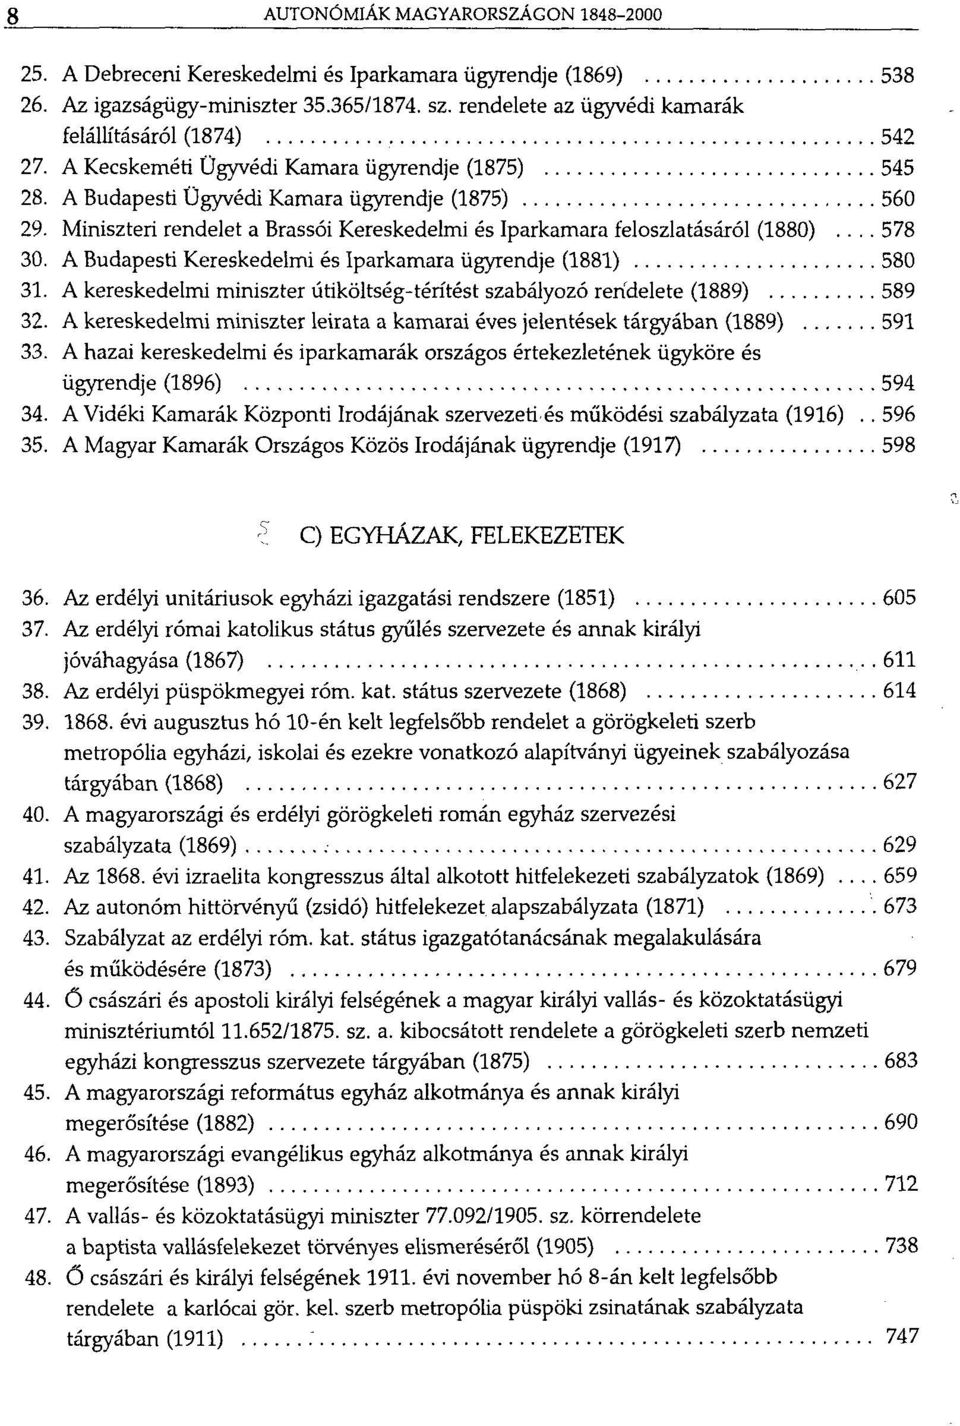 Miniszteri rendelet a Brassói Kereskedelmi és Iparkamara feloszlatásáról (1880)... 578 30. A Budapesti Kereskedelmi és Iparkamara ügyrendje (1881) 580 31.